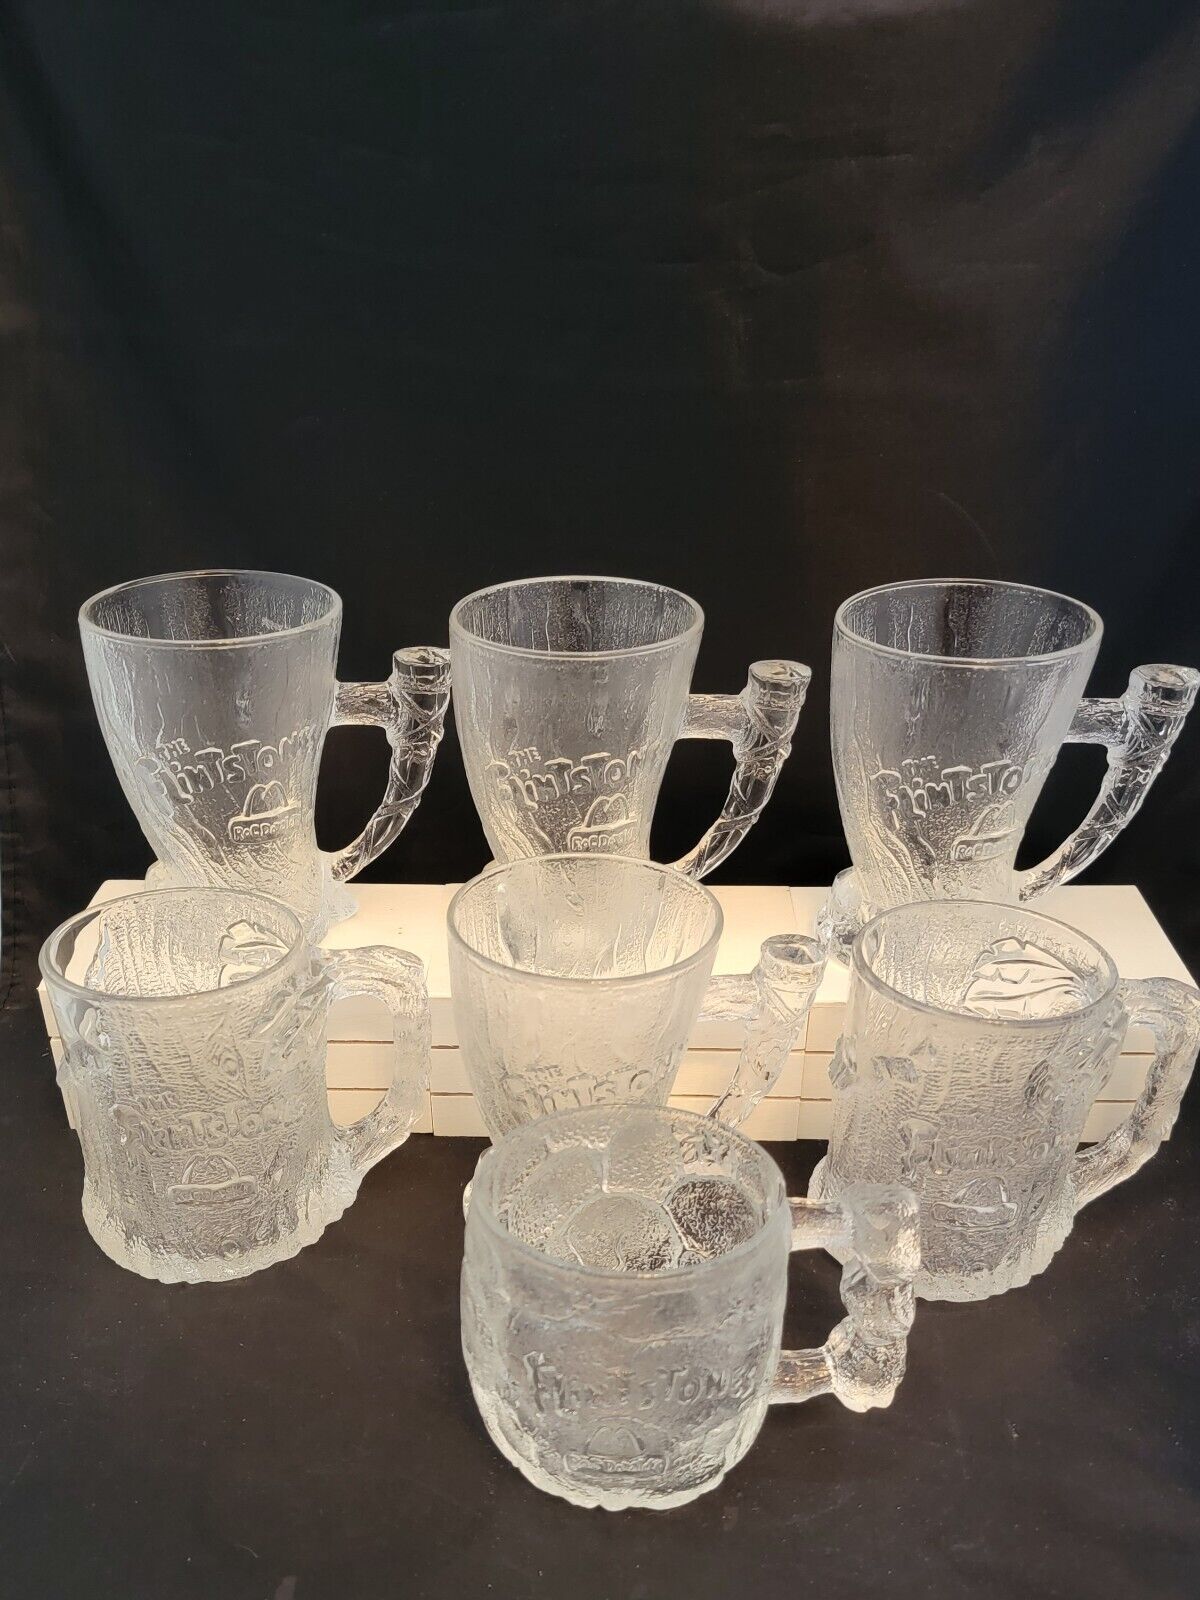 1993 McDonalds Collector Mugs Flintstones LOT of 7 Vintage Glass Drinkware Cups